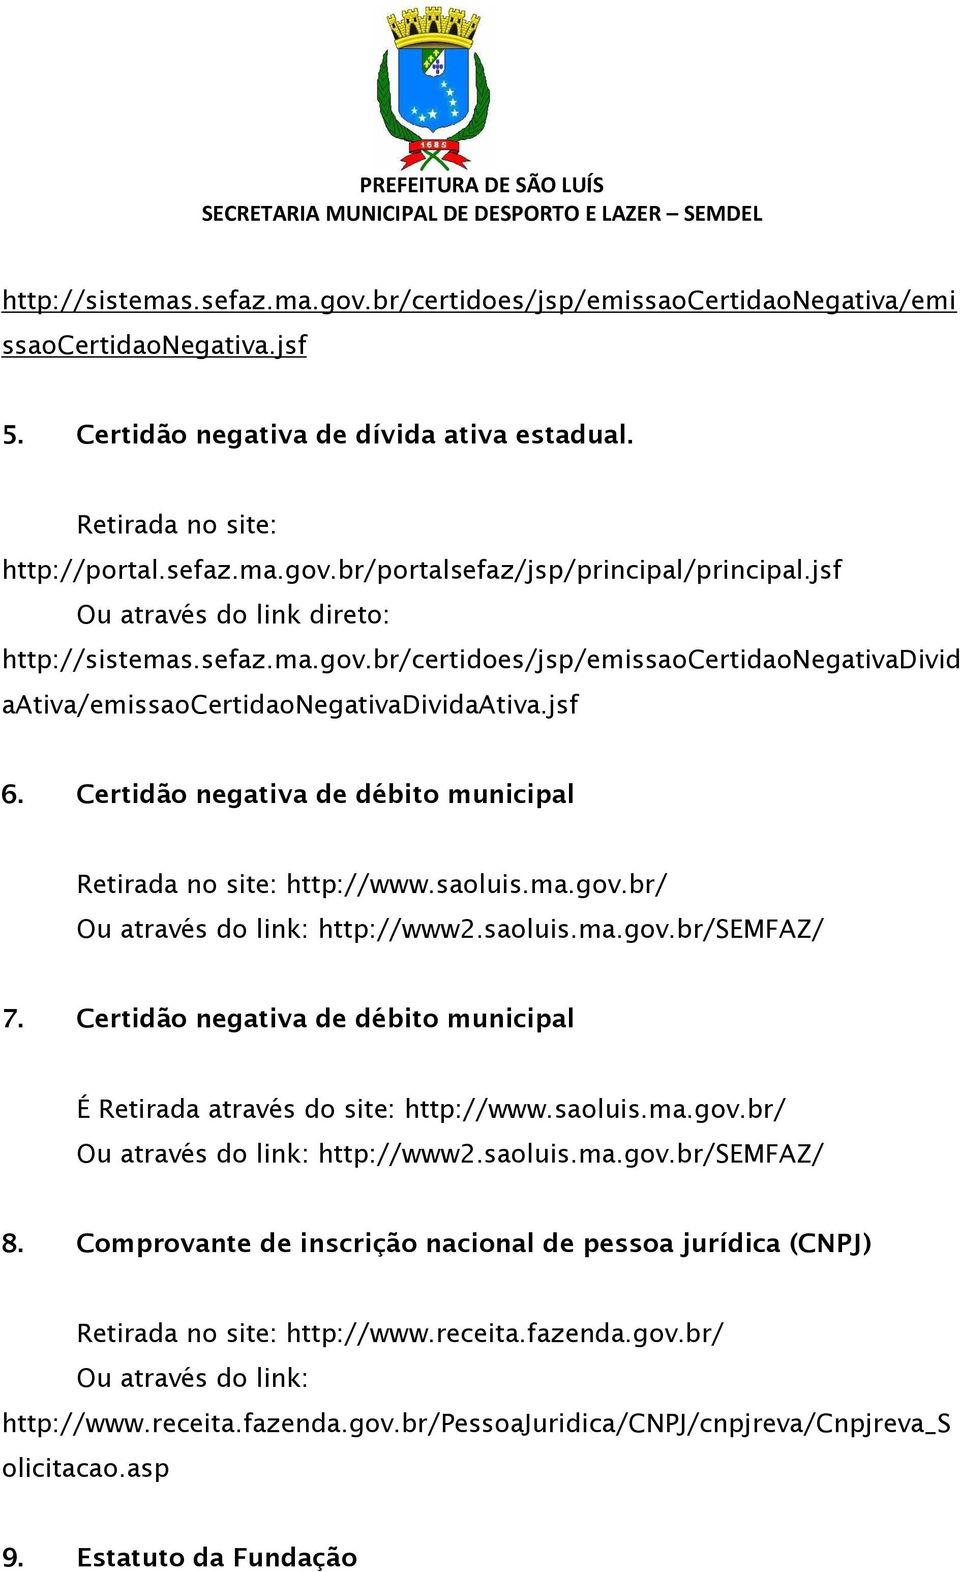 Certidão negativa de débito municipal Retirada no site: http://www.saoluis.ma.gov.br/ Ou através do link: http://www2.saoluis.ma.gov.br/semfaz/ 7.